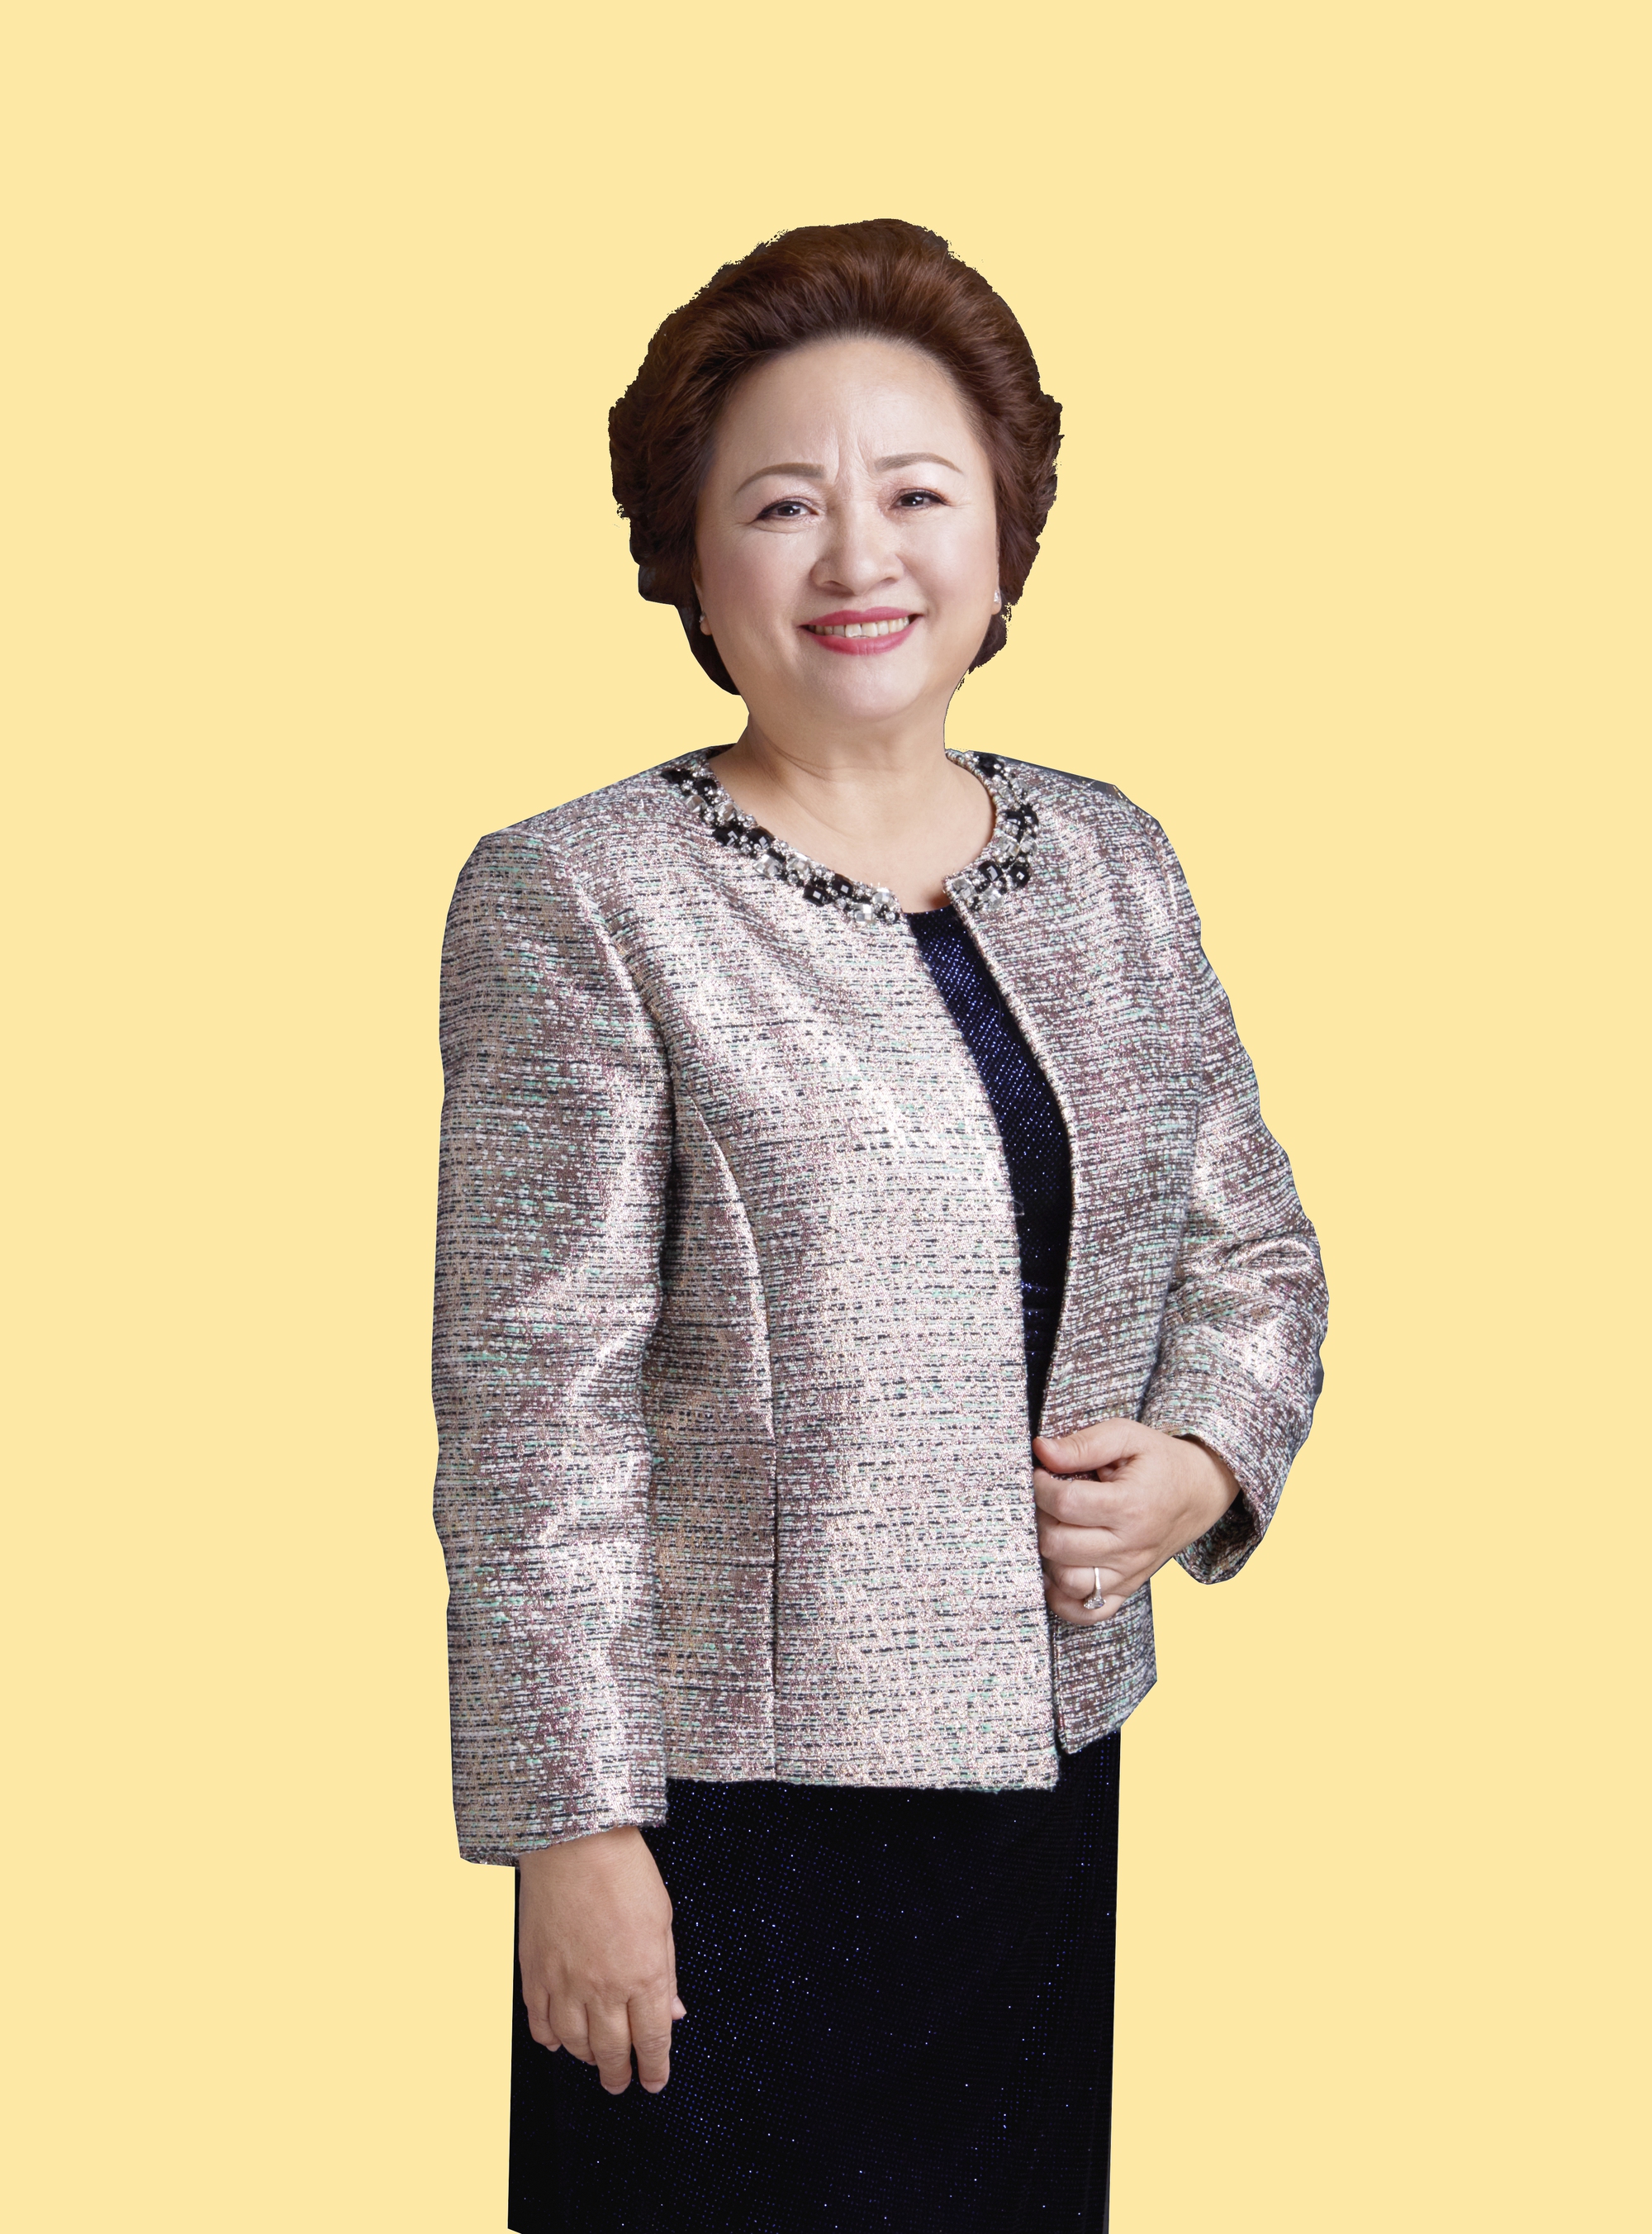 Bà Nguyễn Thị Nga, Chủ tịch Tập đoàn BRG: “Tôi không cho phép mình được nghỉ” - Ảnh 2.